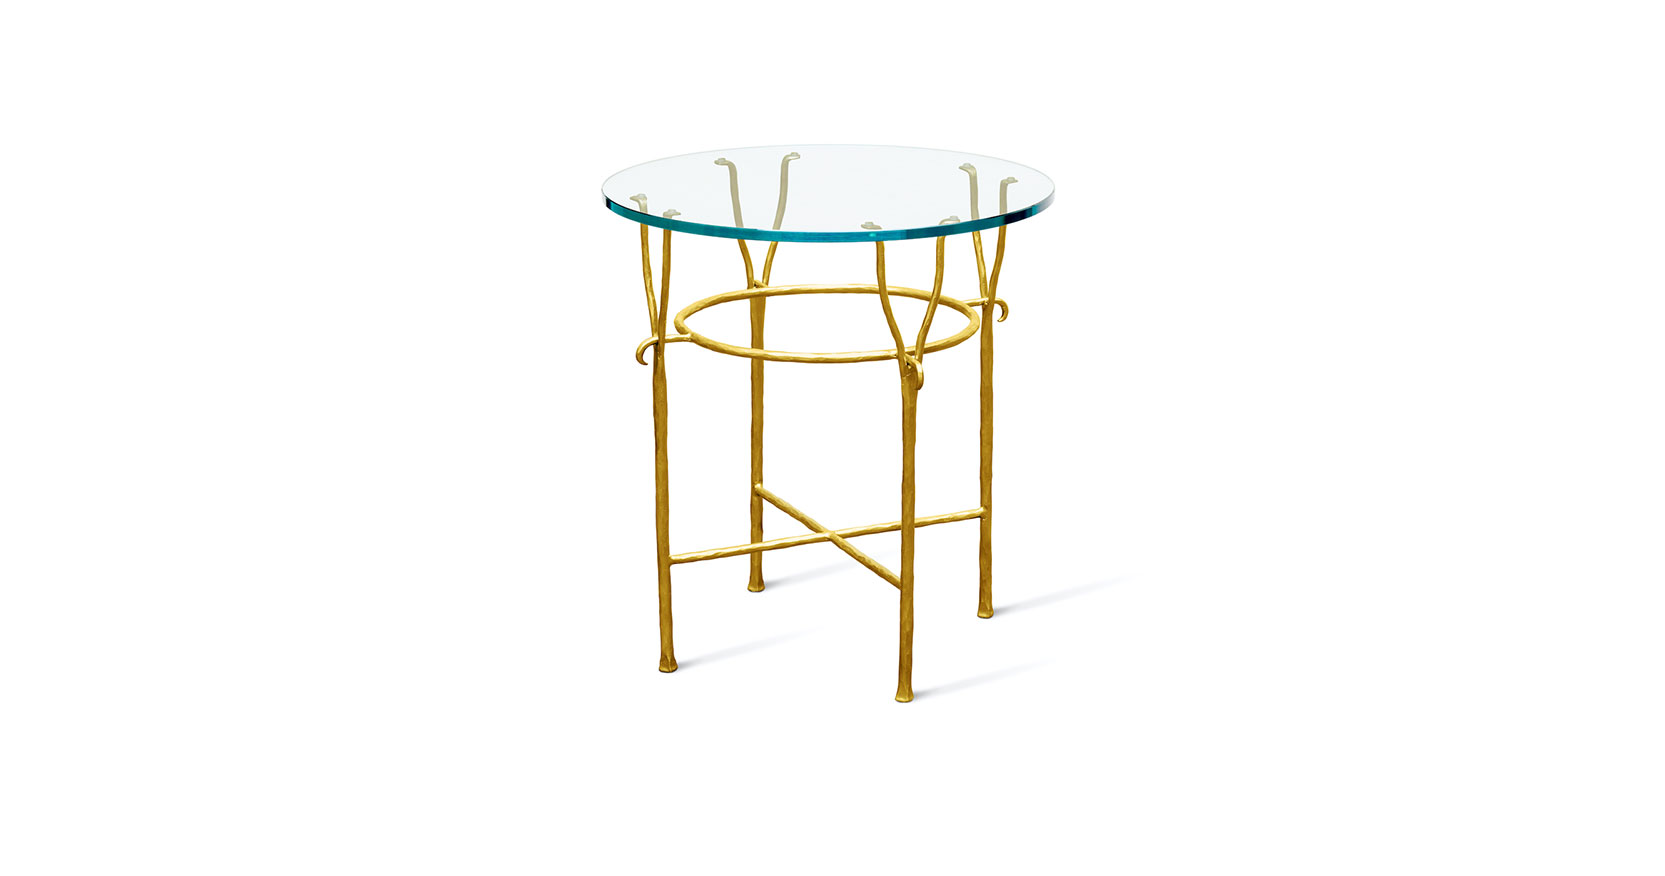 Garouste Bonetti, petite table ronde avec plateau en verre, pieds en fer forgé doré qui se termine vers le haut par deux fourches